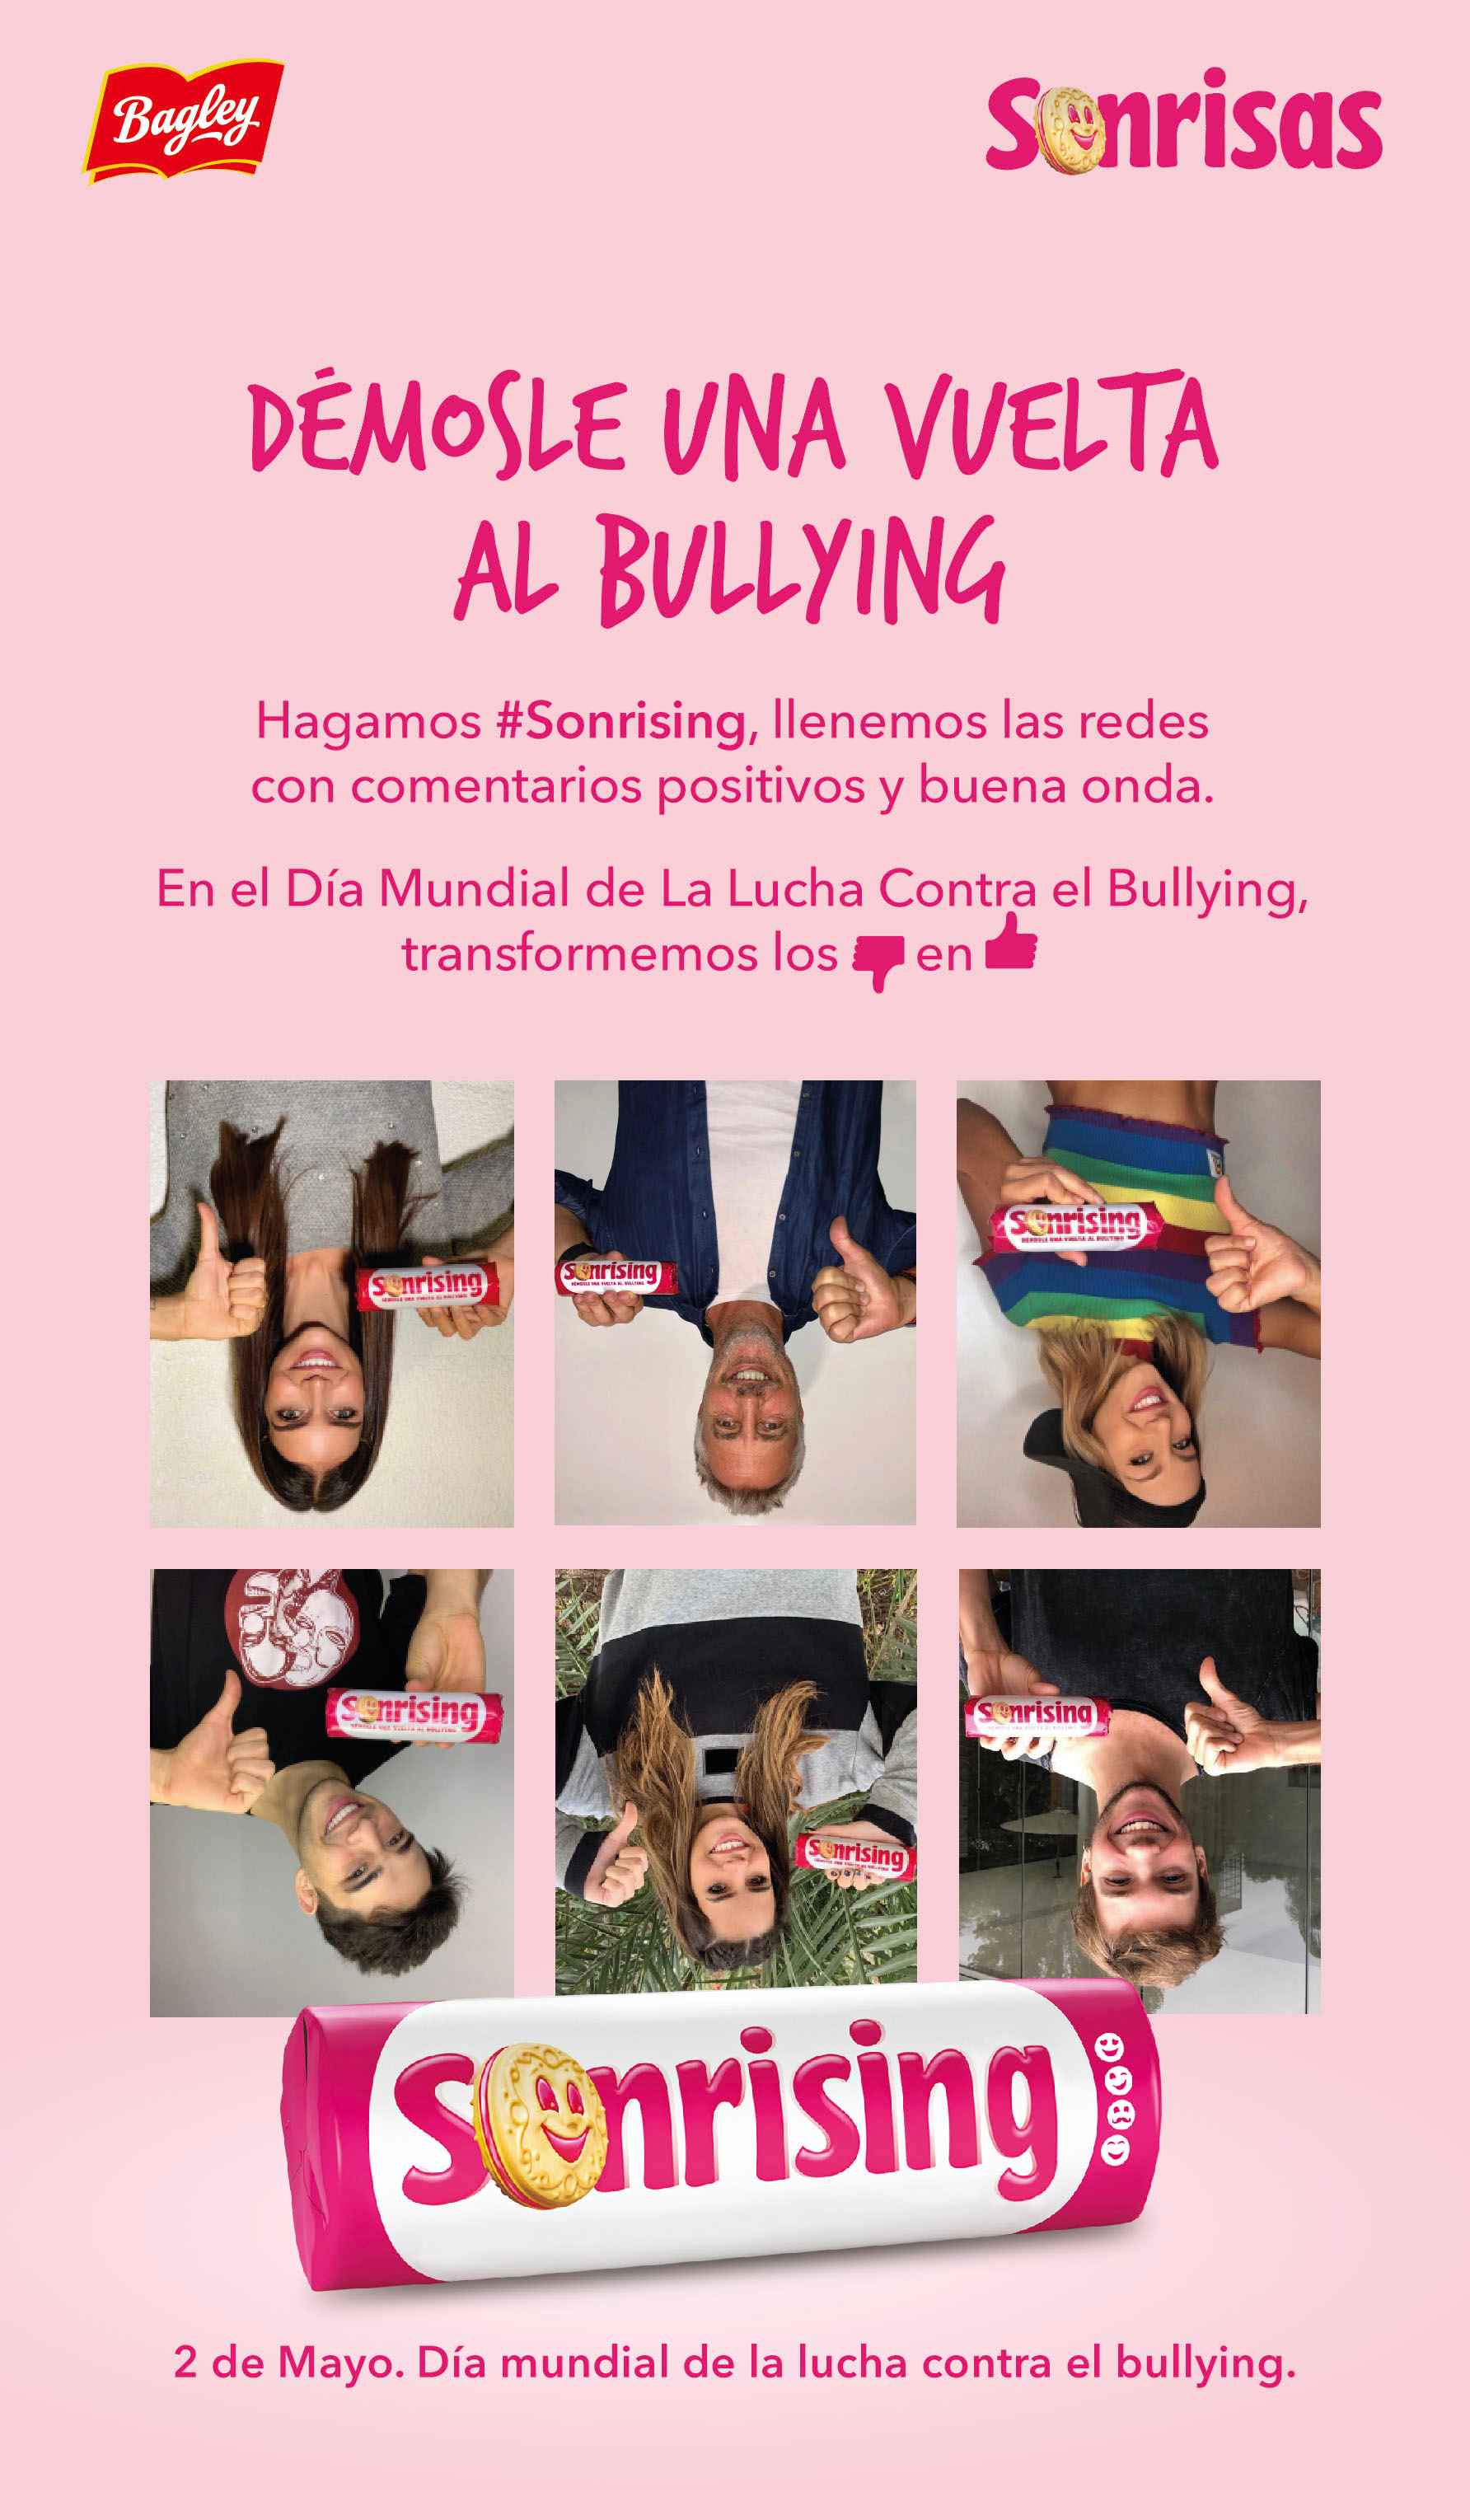 Portada de #Sonrising, la nueva campaña de Bagley contra el bullying